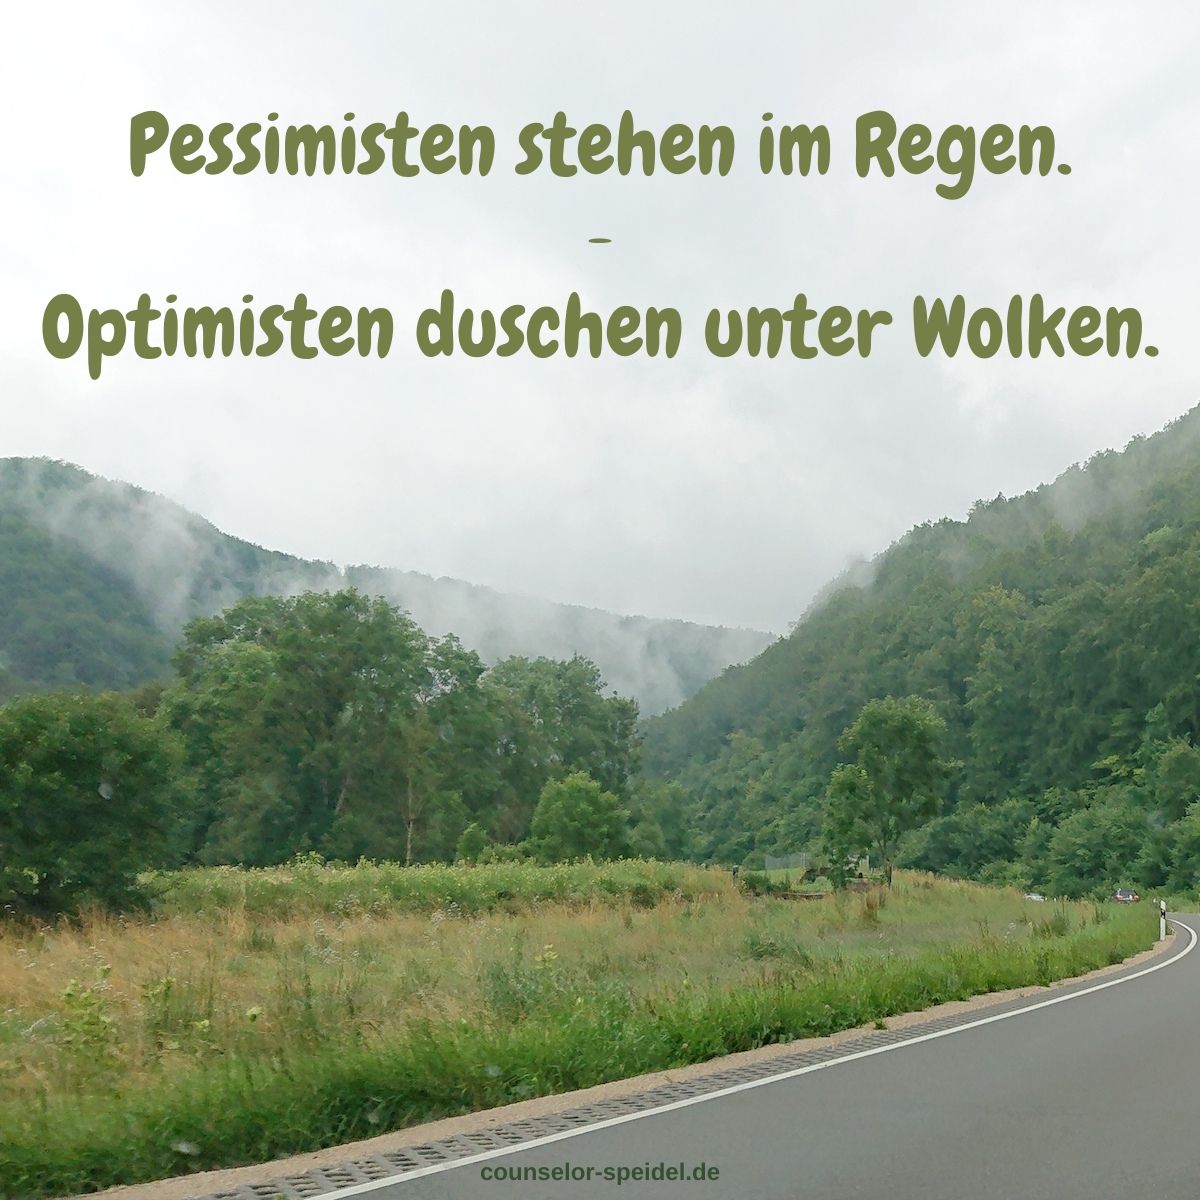 pessimisten_stehen_im_regen